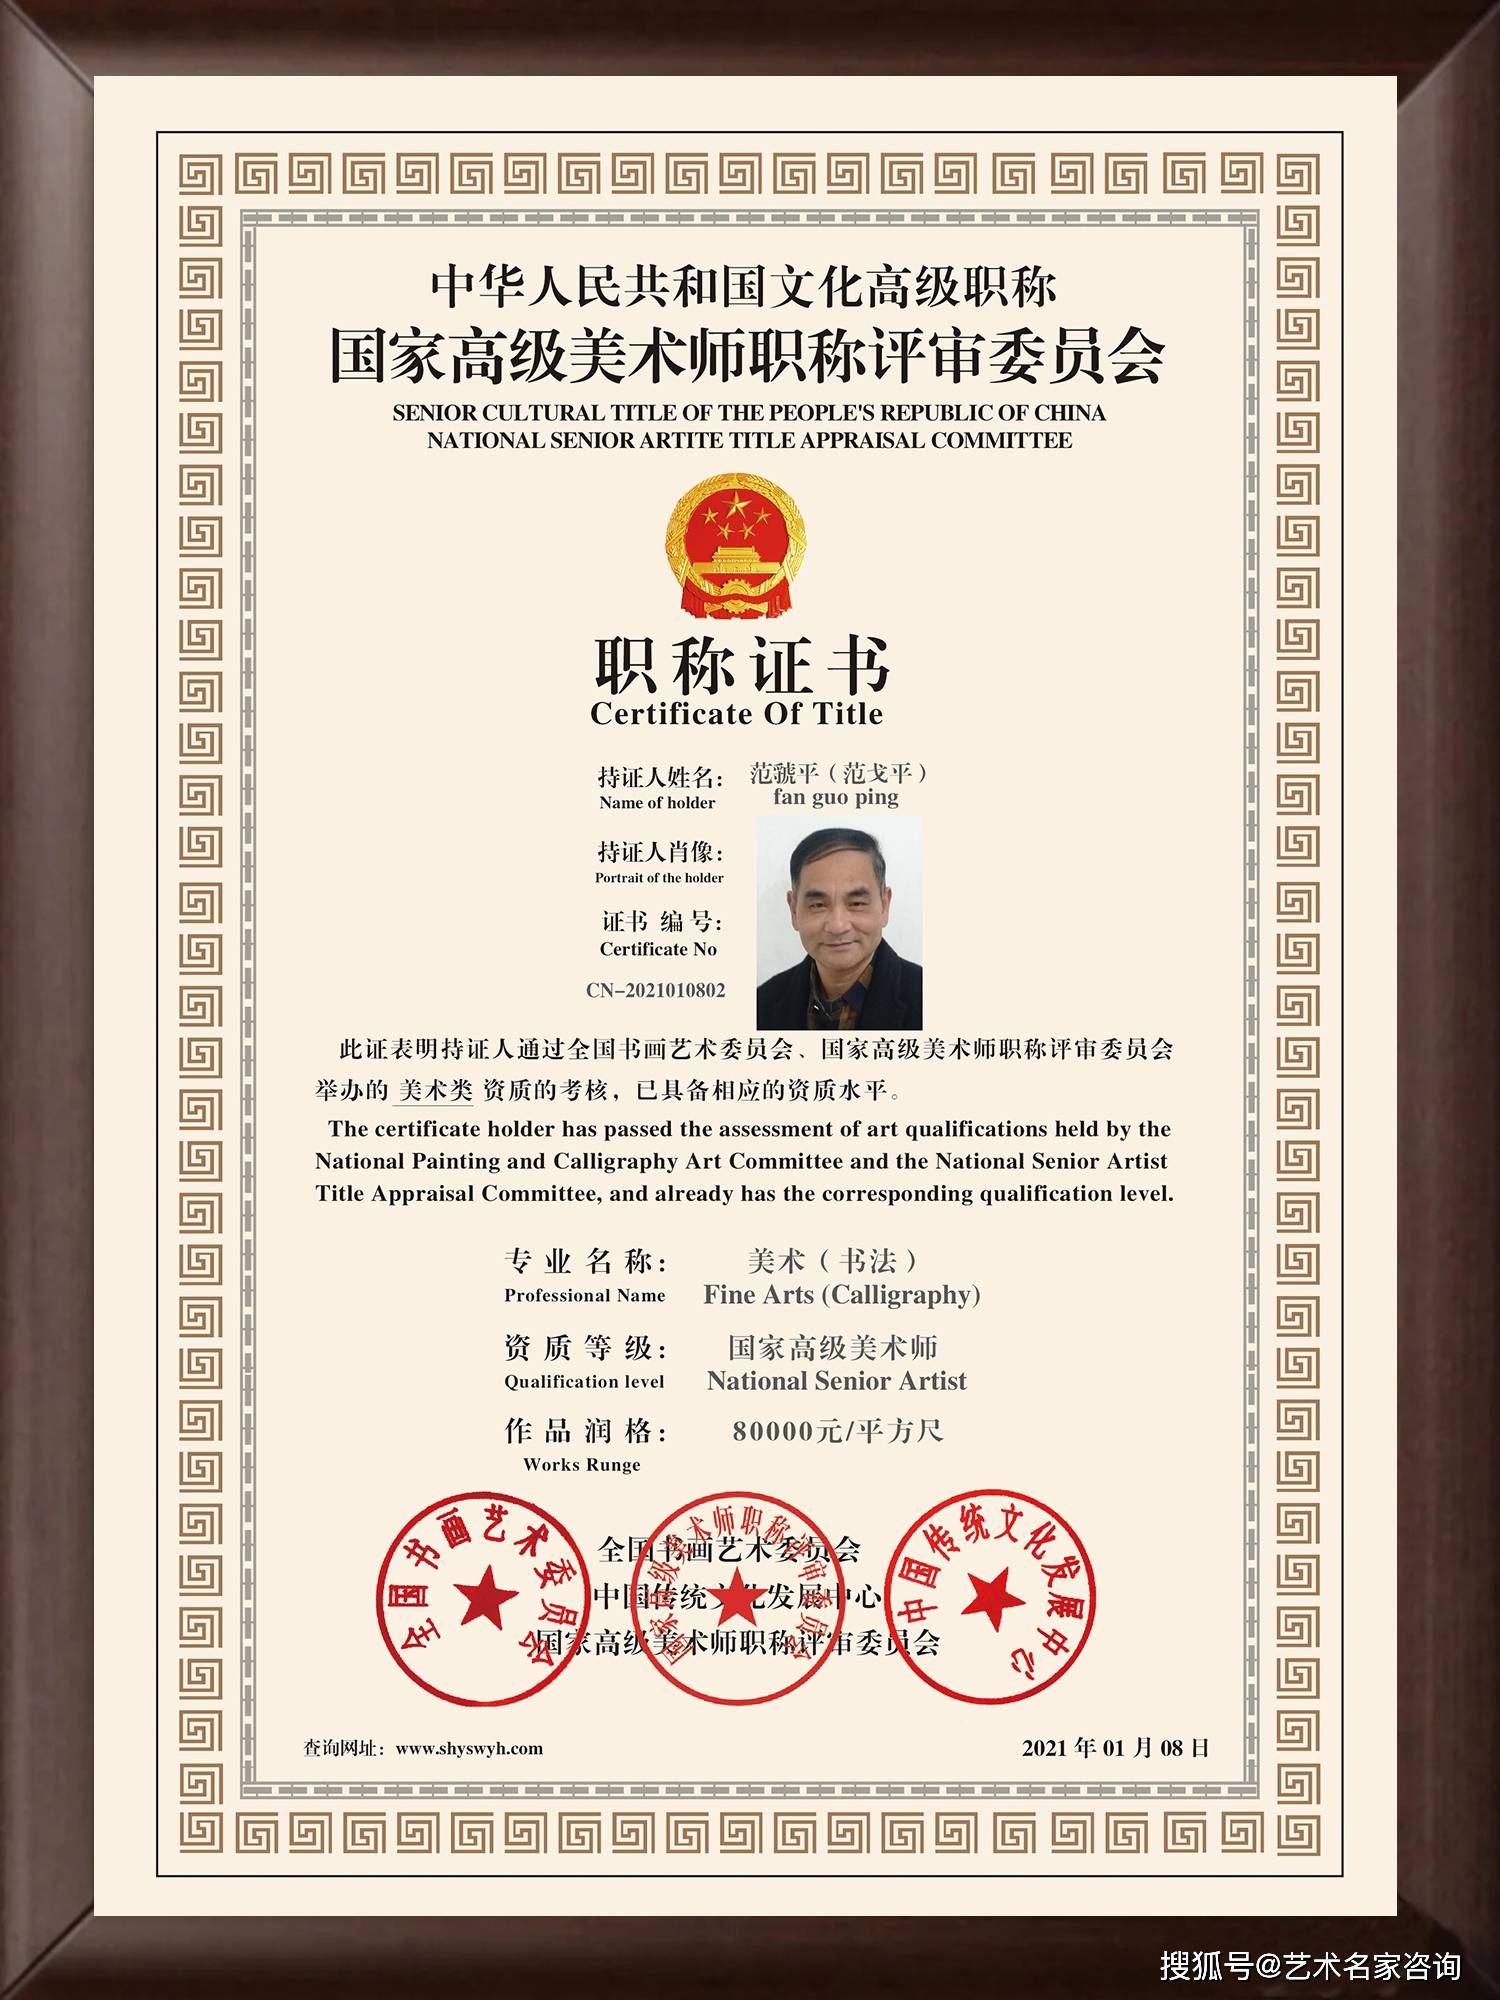 范虢平 中国文化高级职称国家高级美术师 高级职称证书